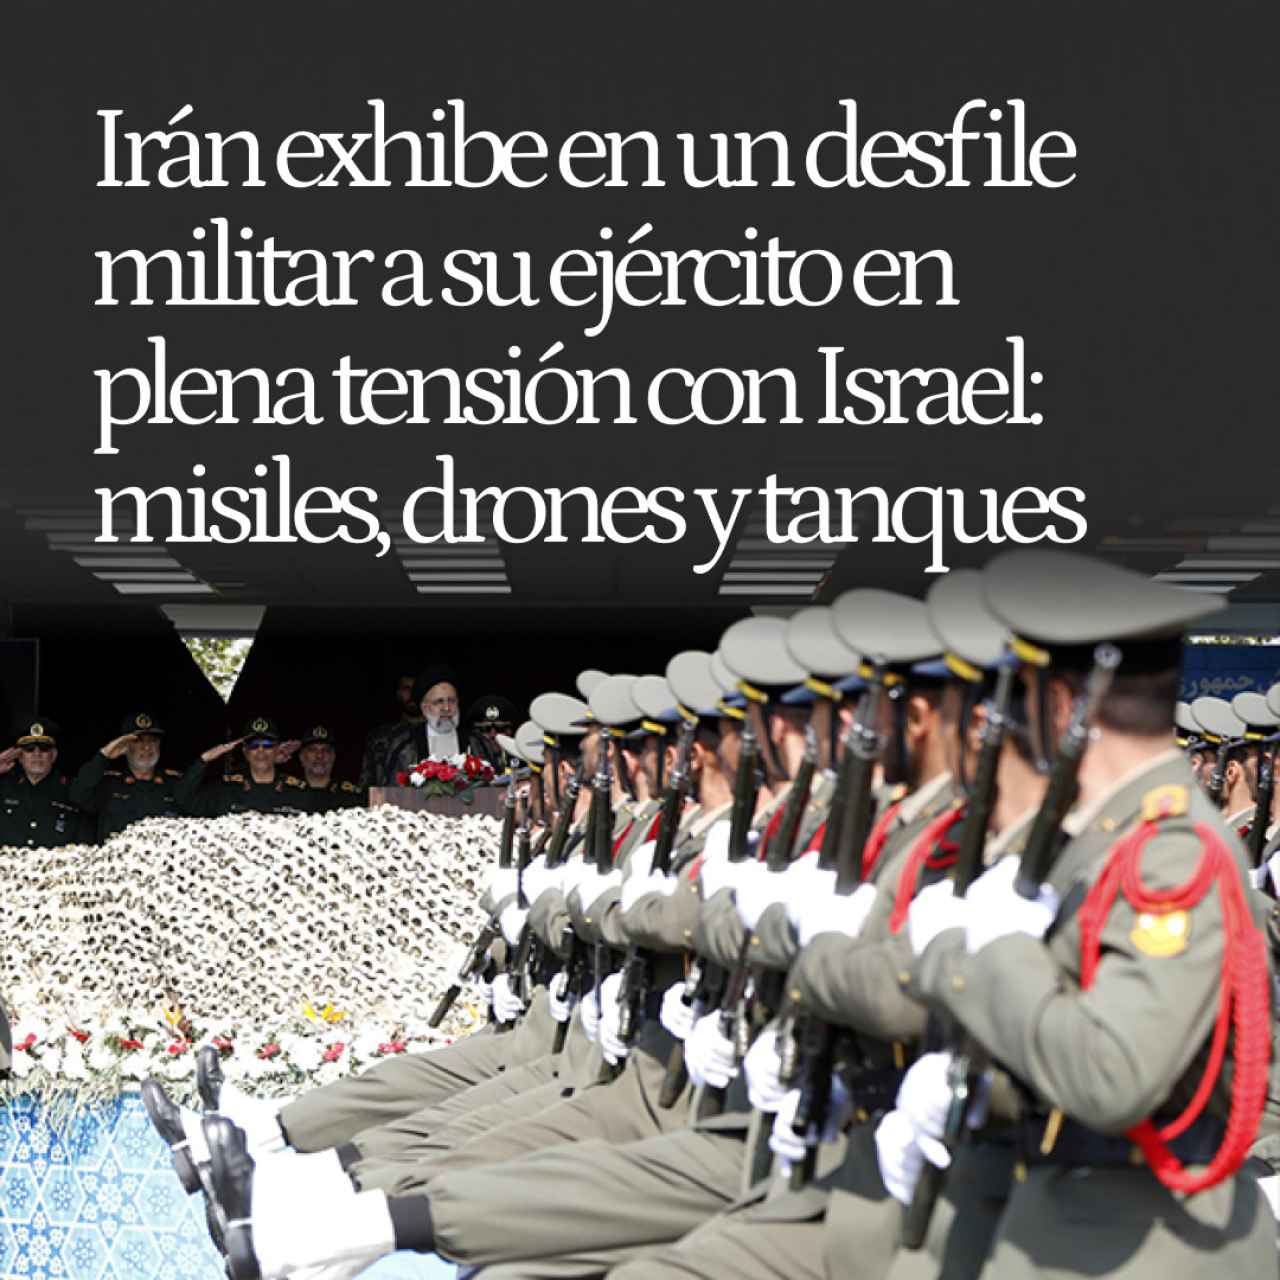 Irán exhibe en un desfile militar a su ejército en plena tensión con Israel: misiles, drones y tanques